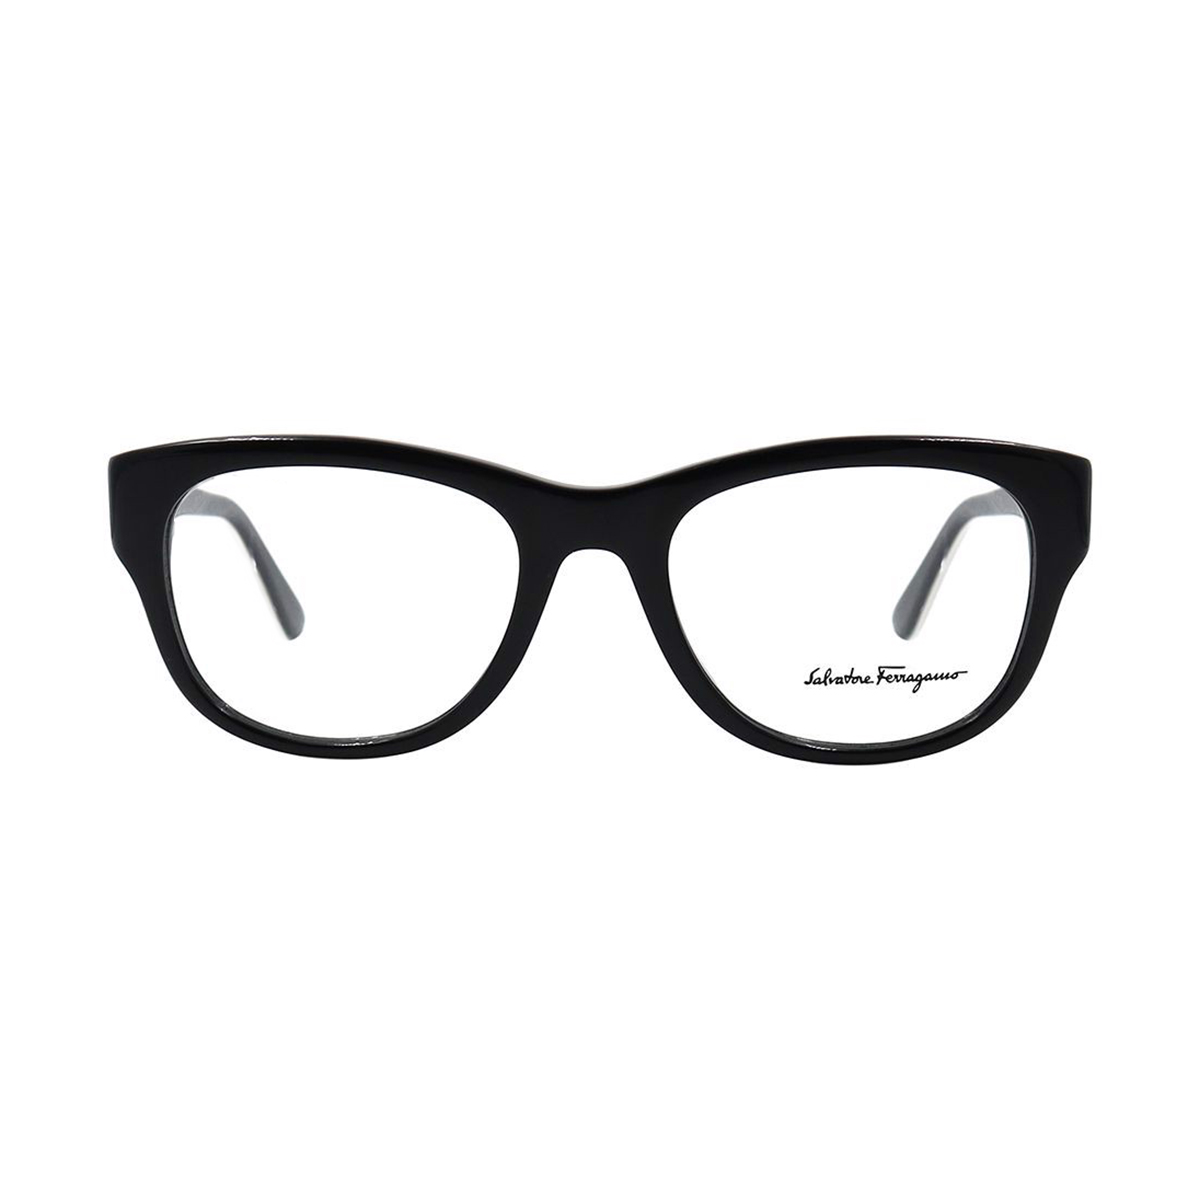 فریم عینک طبی سالواتوره فراگامو مدل SF2618